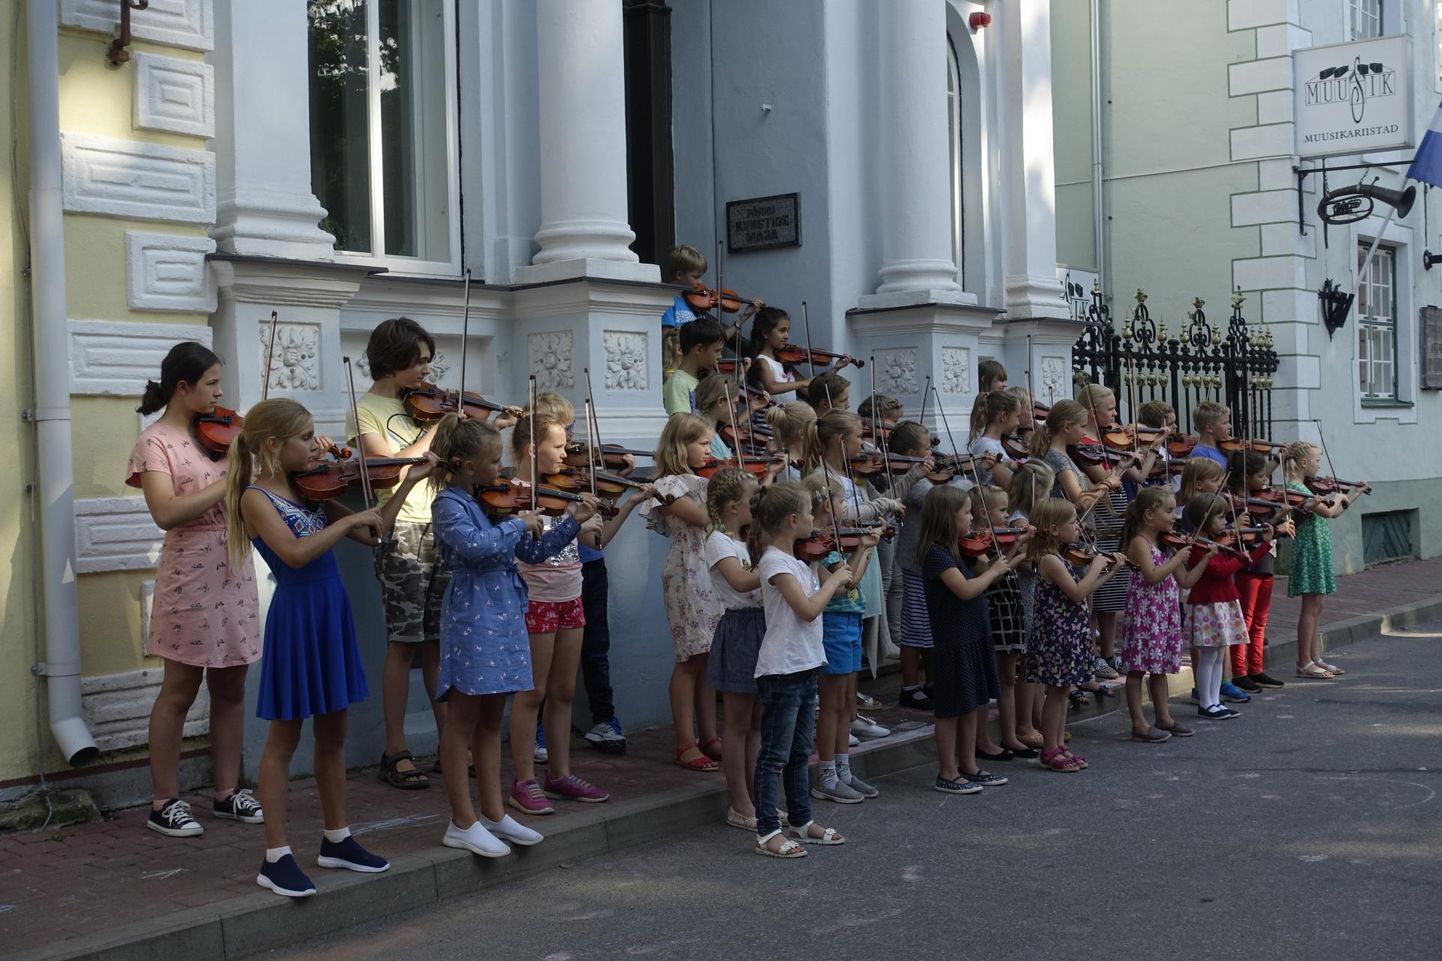 Noored viiuldajad esinesid tänaval.